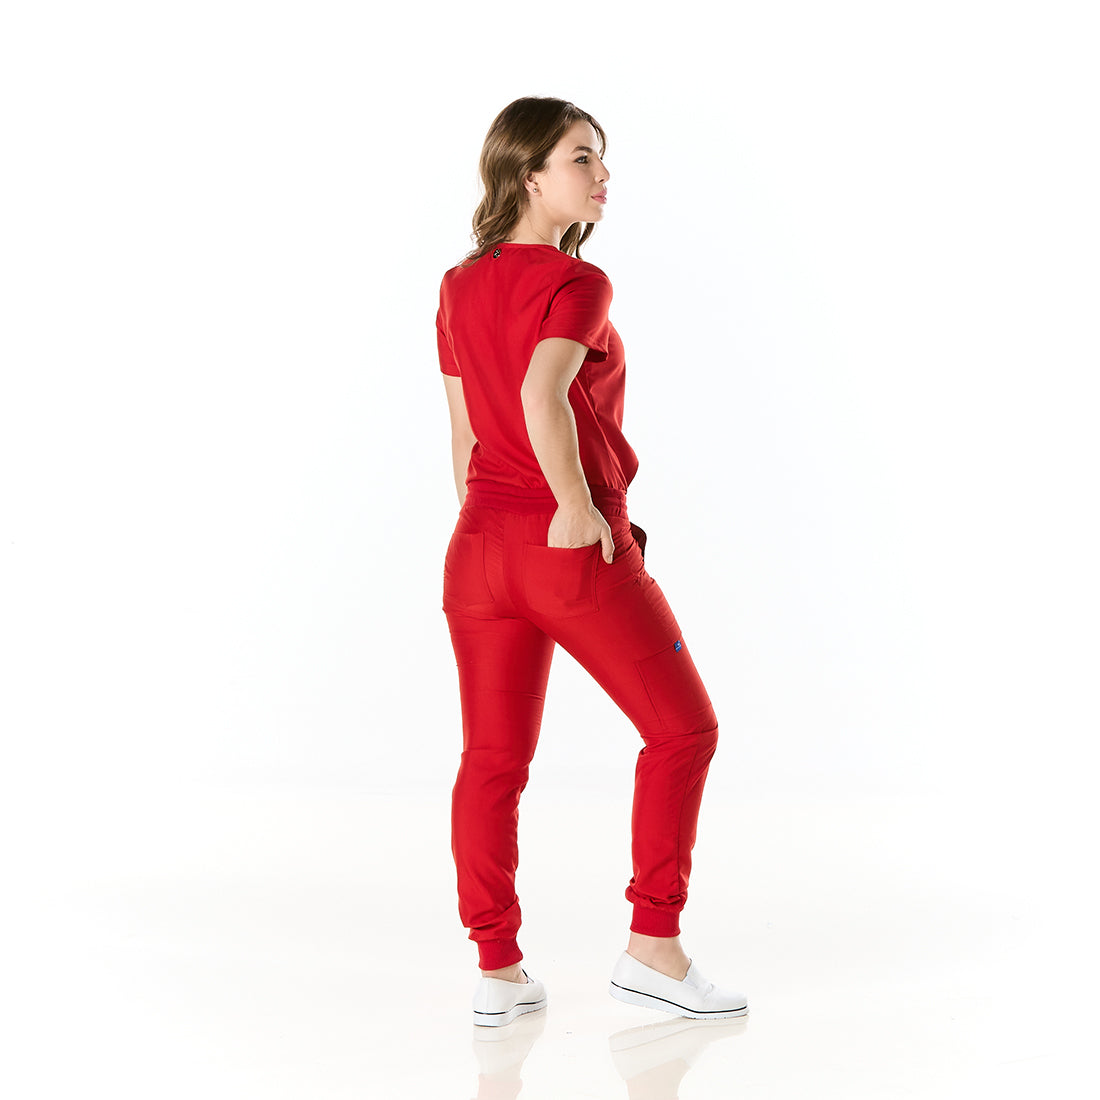 Mujer vistiendo conjunto sanitario color rojo con escote en v y pantalon tipo jogger - espalda